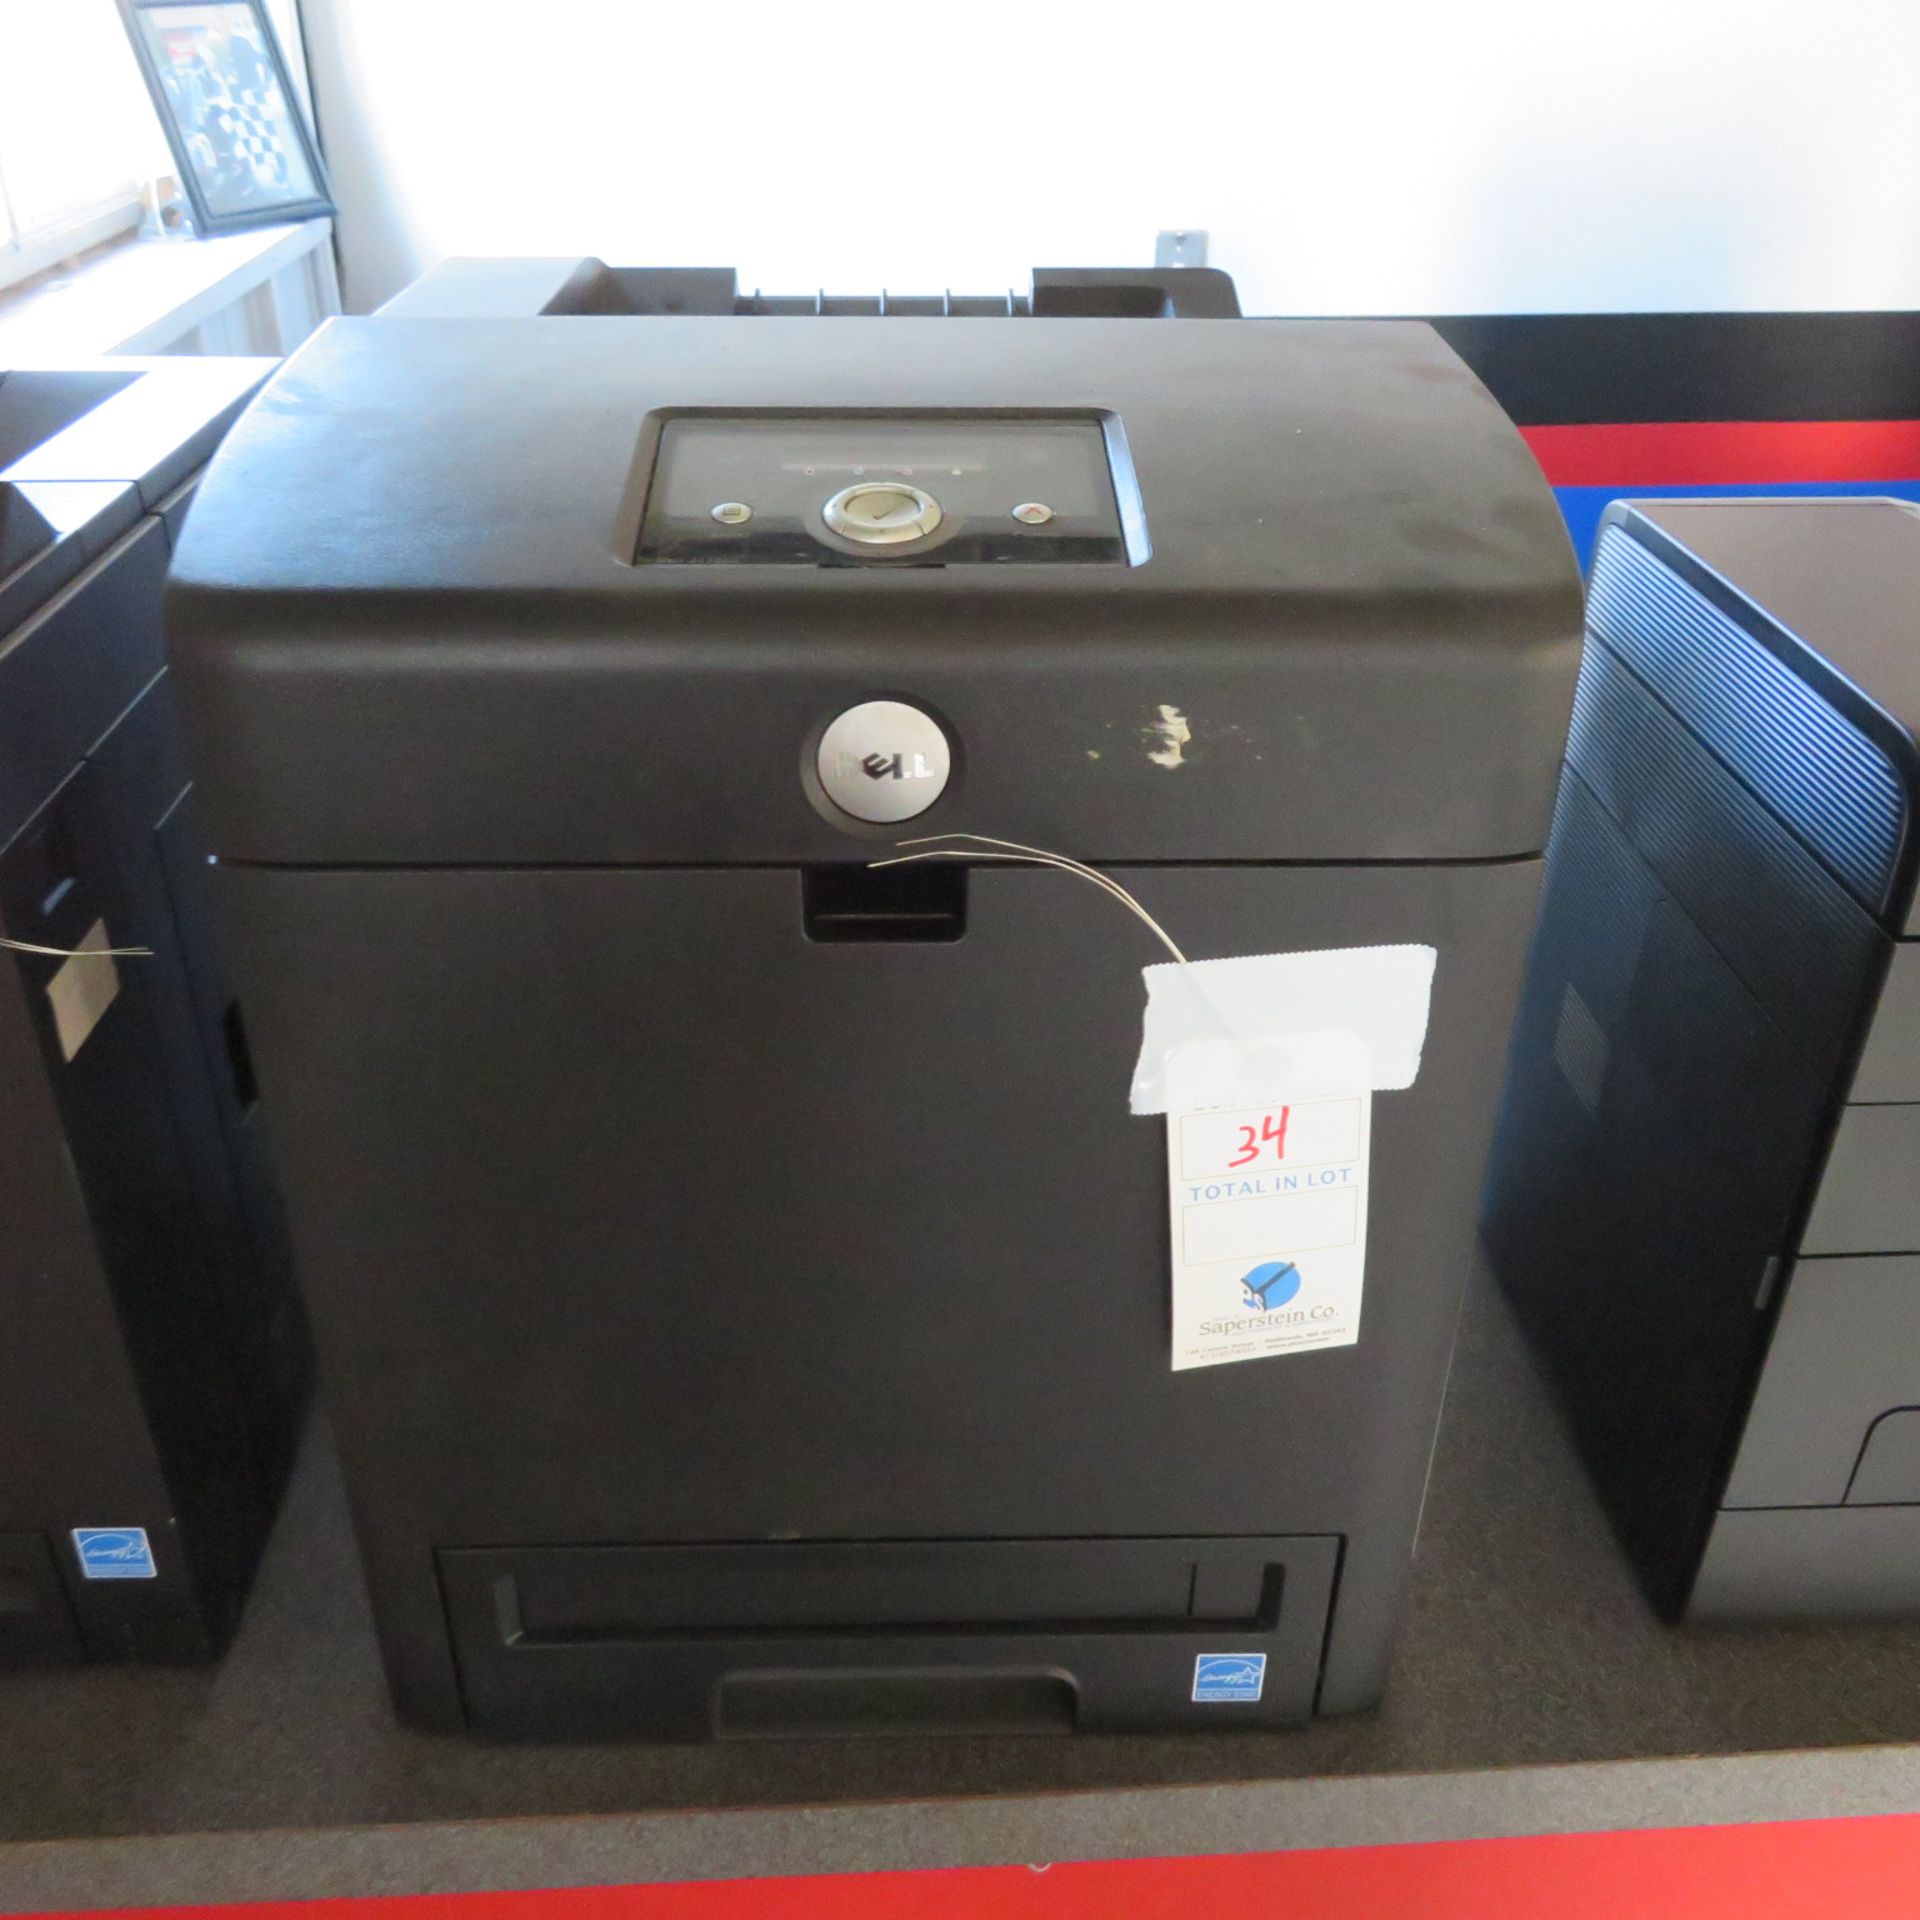 Dell #3110CN Color Printer